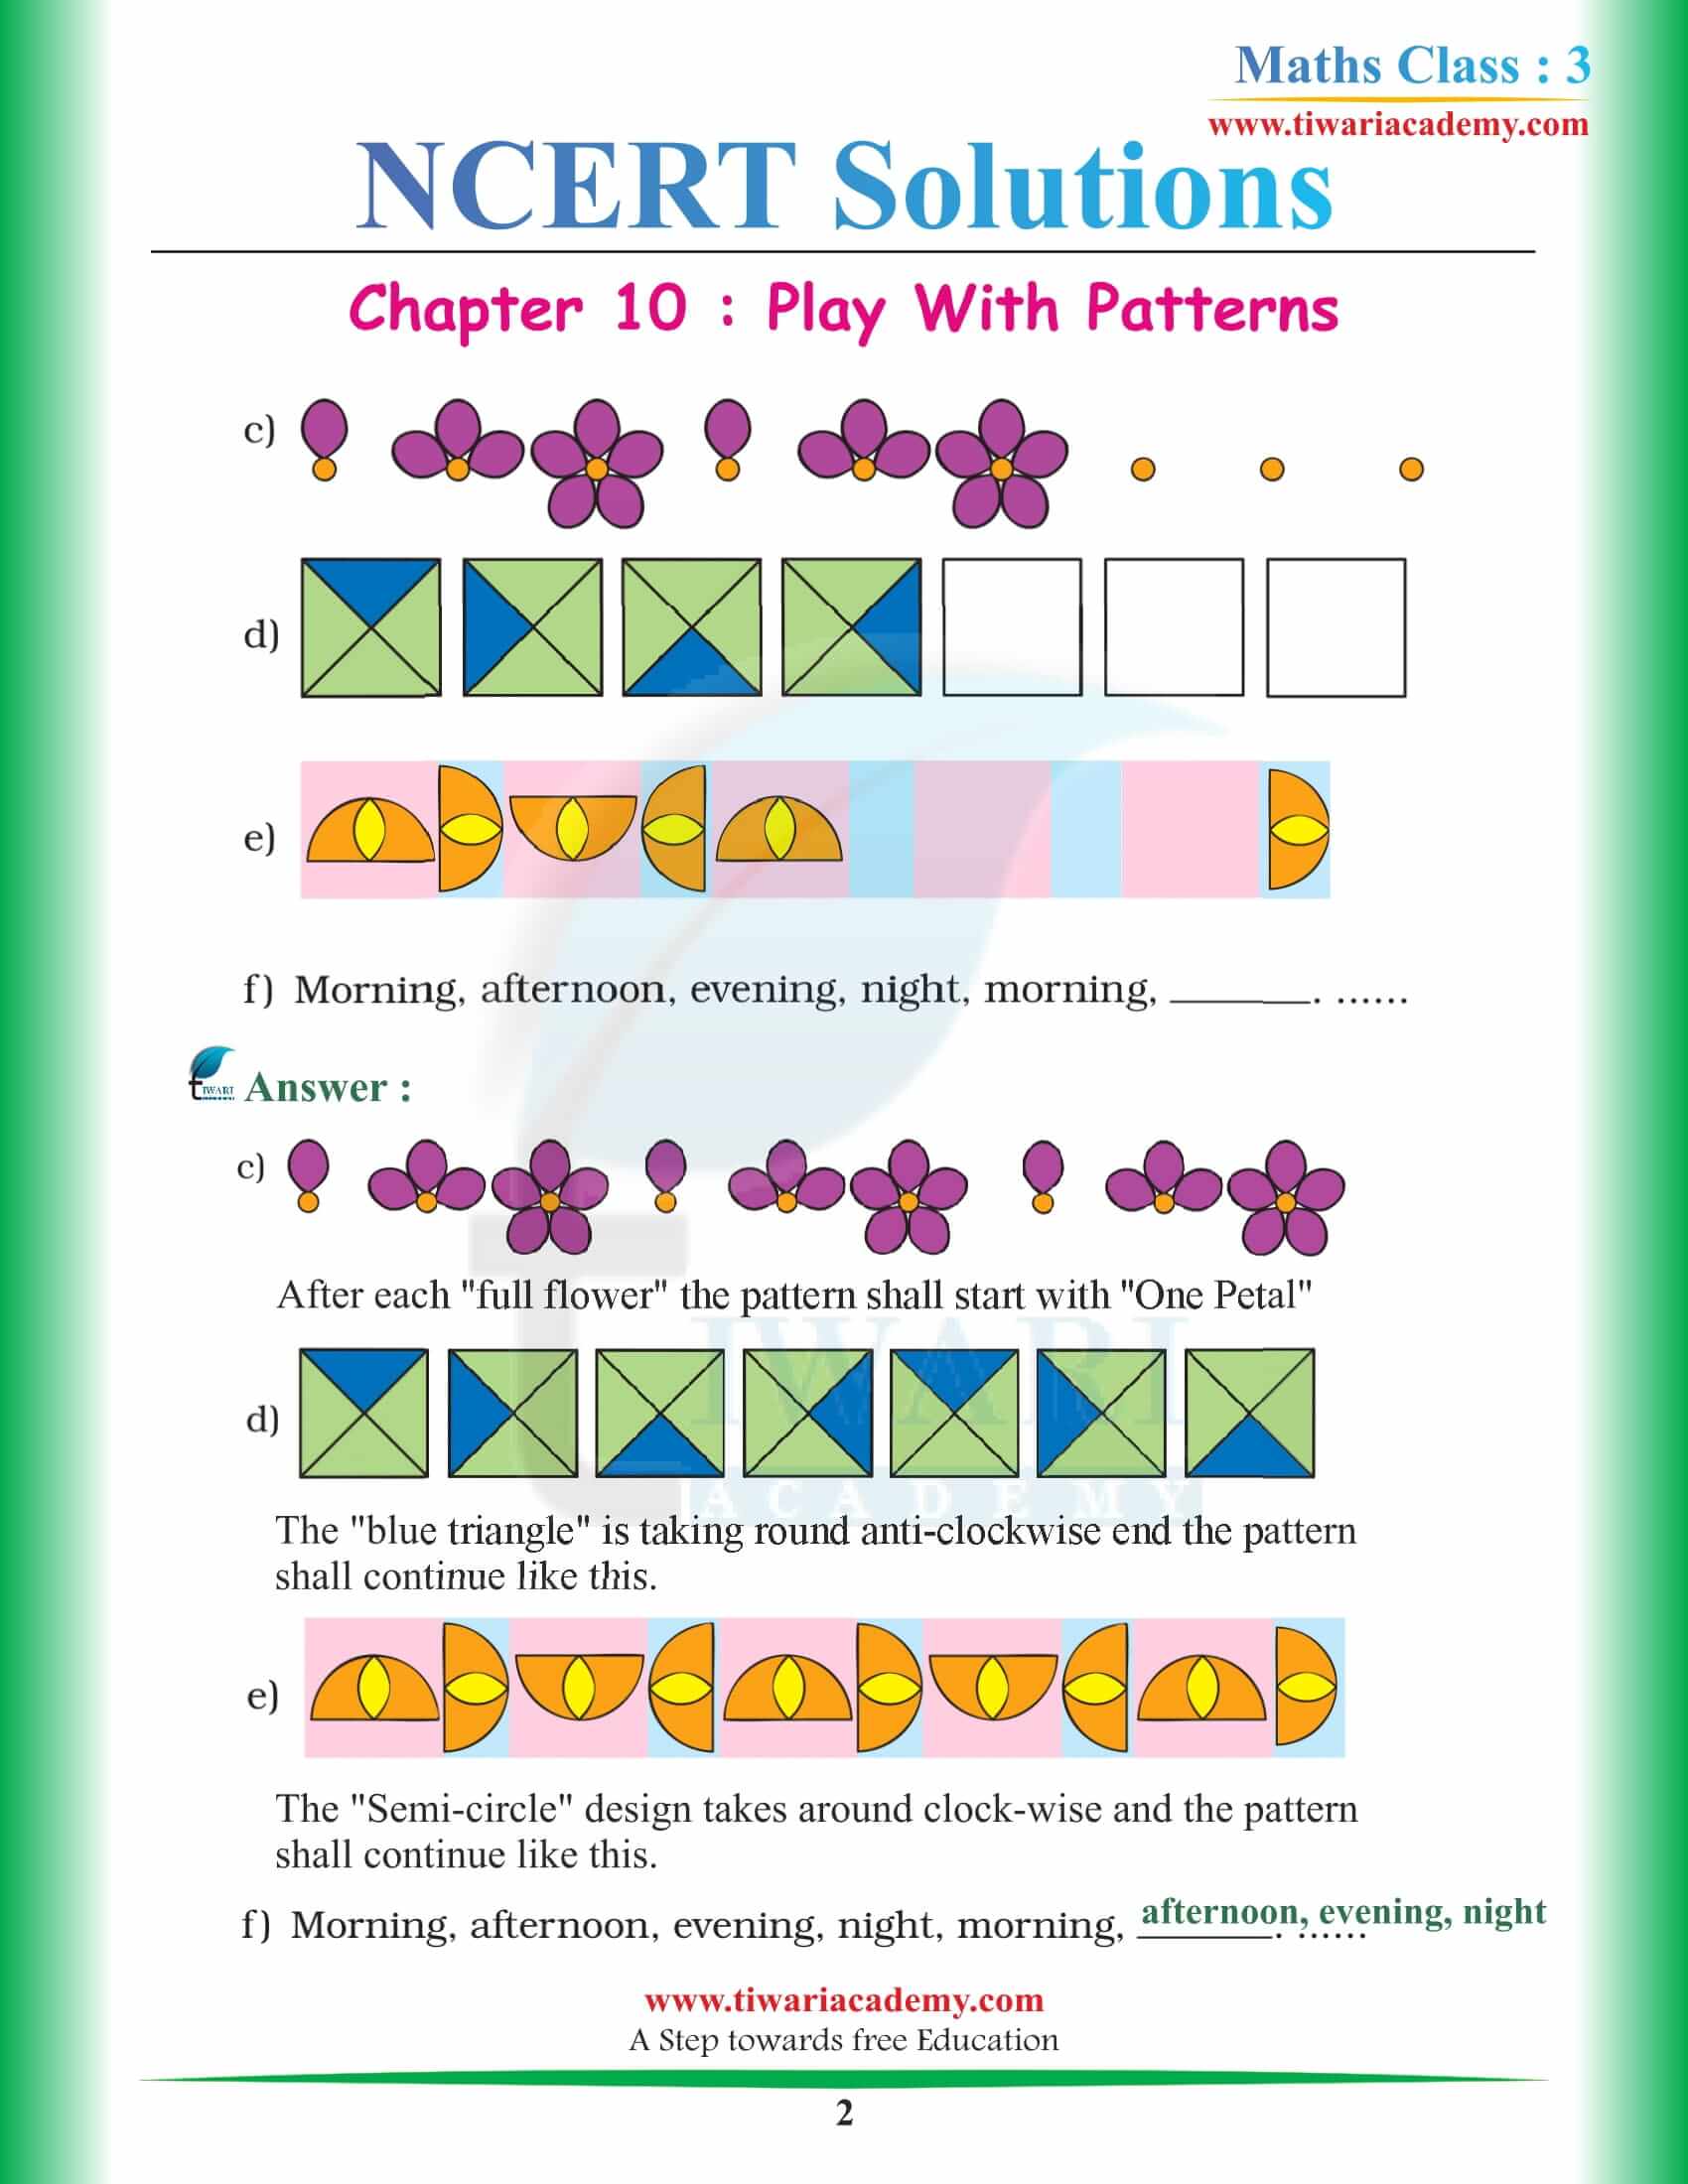 NCERT Solutions for Class 3 Maths Chapter 10